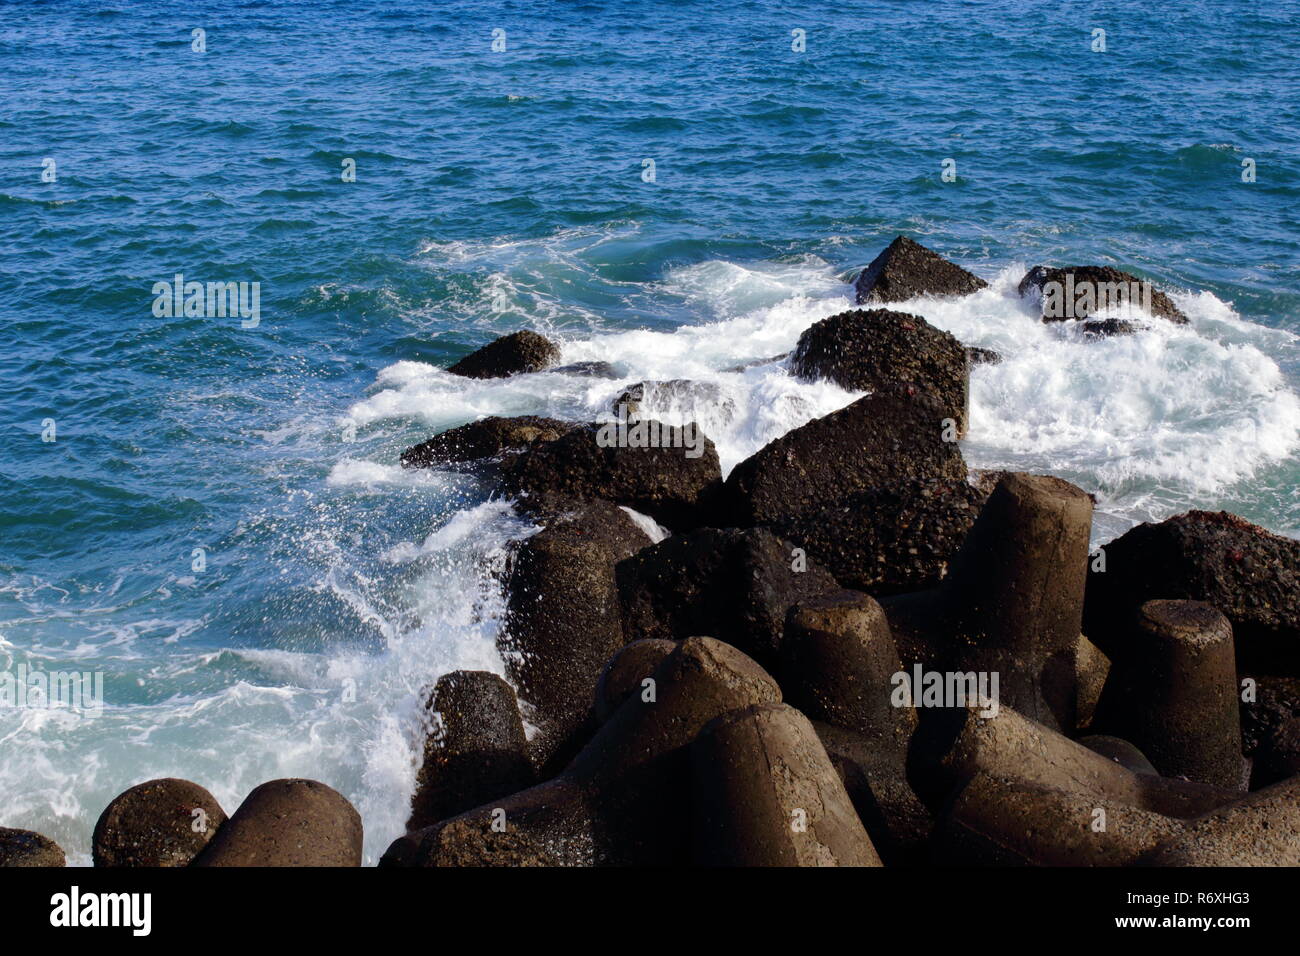 breaking waves. Sea foam. (romper de las olas) Stock Photo